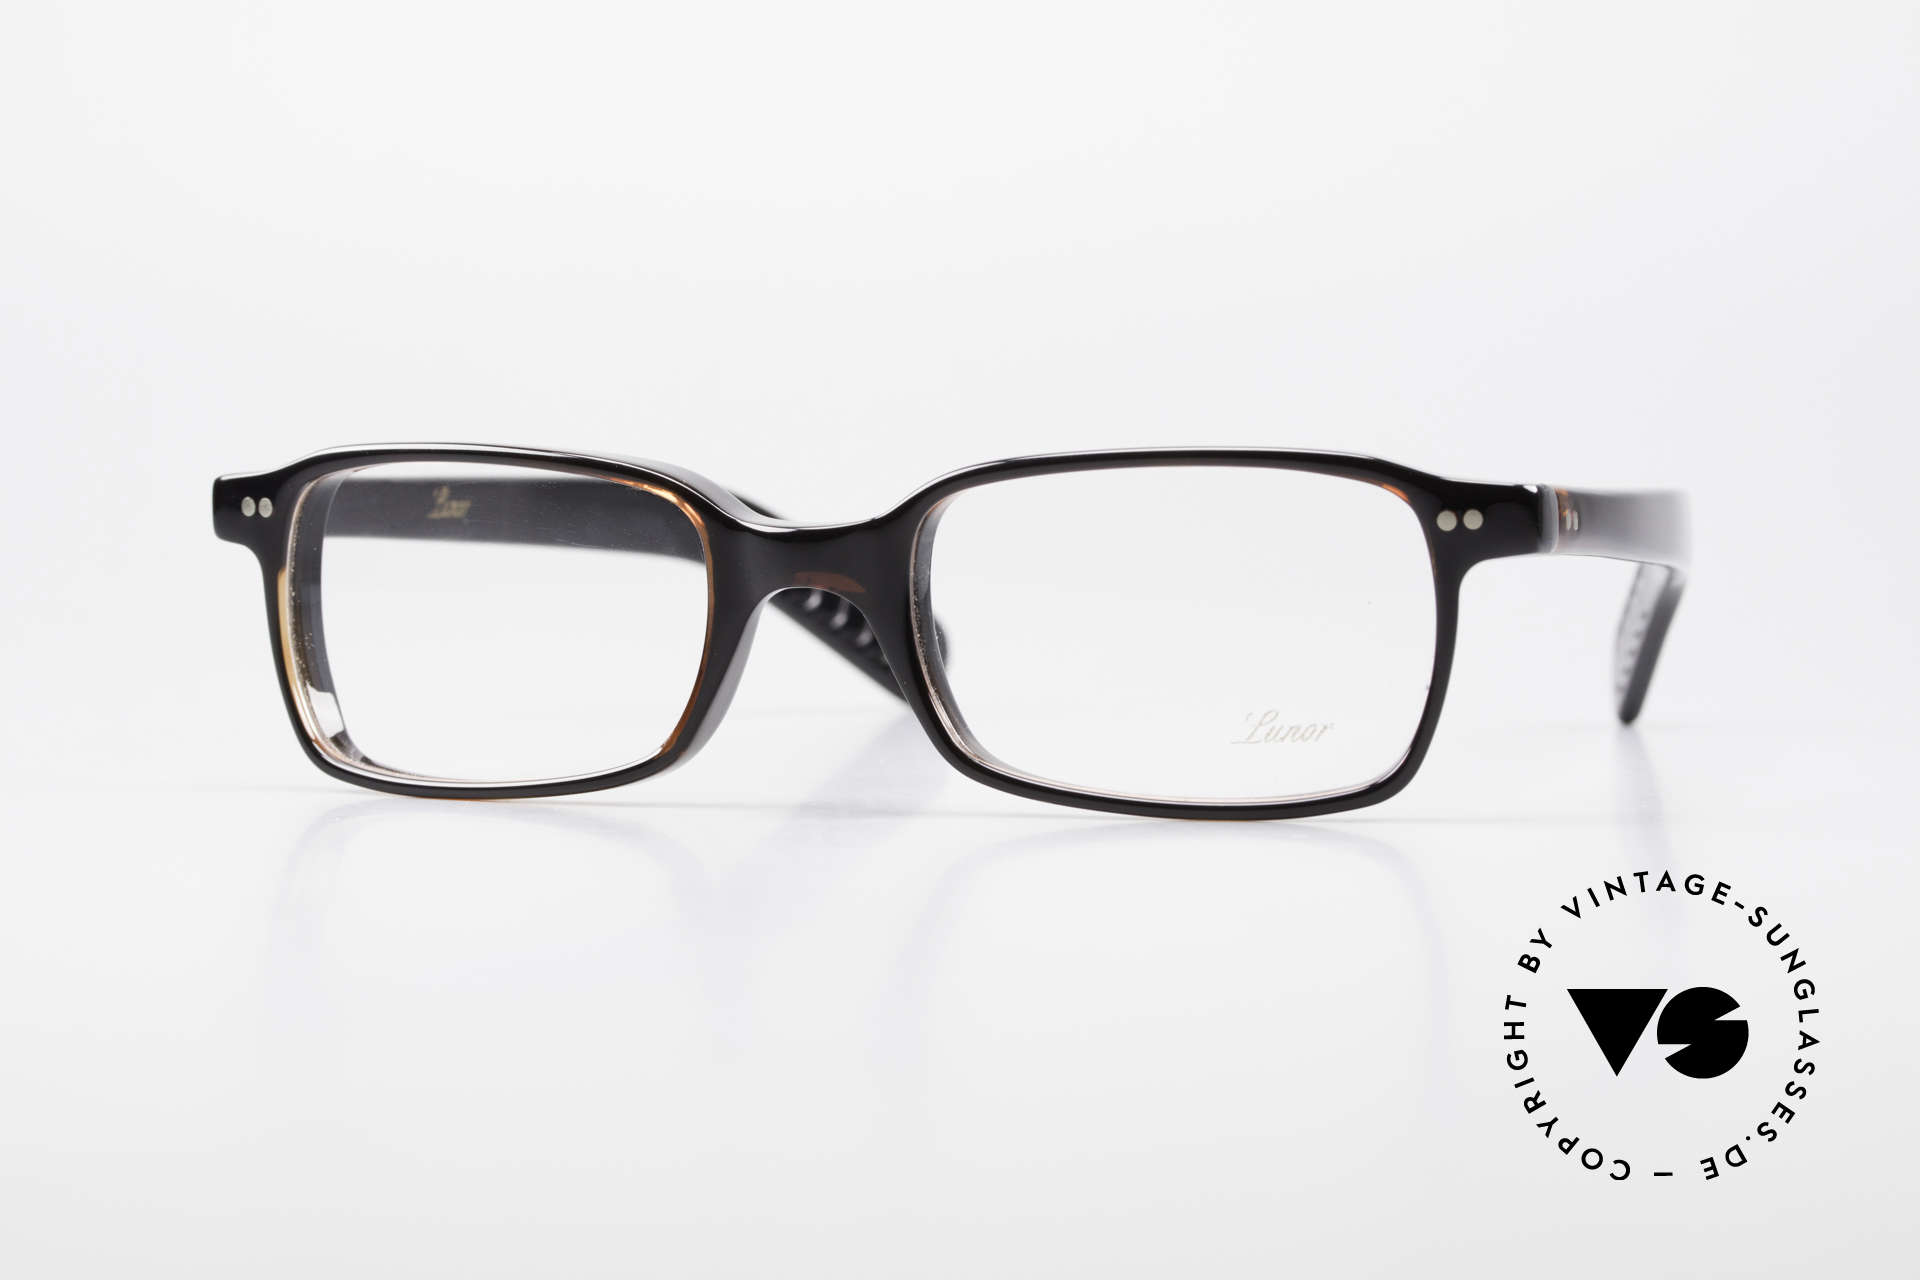 Lunor A55 Square Lunor Glasses Acetate, A 55: square Lunor glasses from the Acetate collection, Made for Men and Women